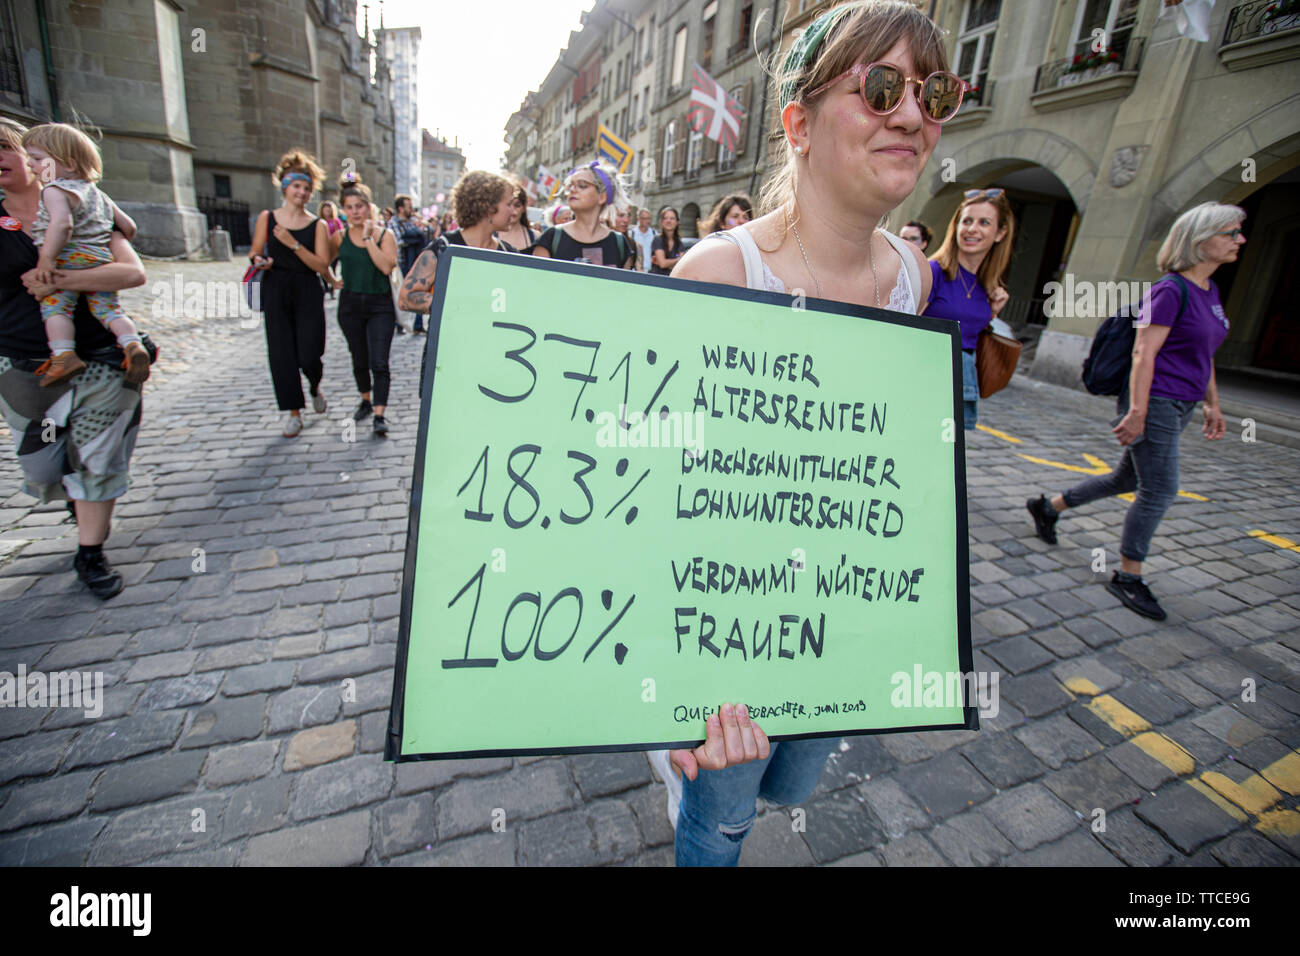 Il Frauenstreik - Womens sciopero - ha portato un numero record di donne per le strade in tutte le grandi città in Svizzera. In Campidoglio Berna, più di 40.000 hanno marciato in tutta la città alla lotta per la parità tra i sessi. Foto Stock